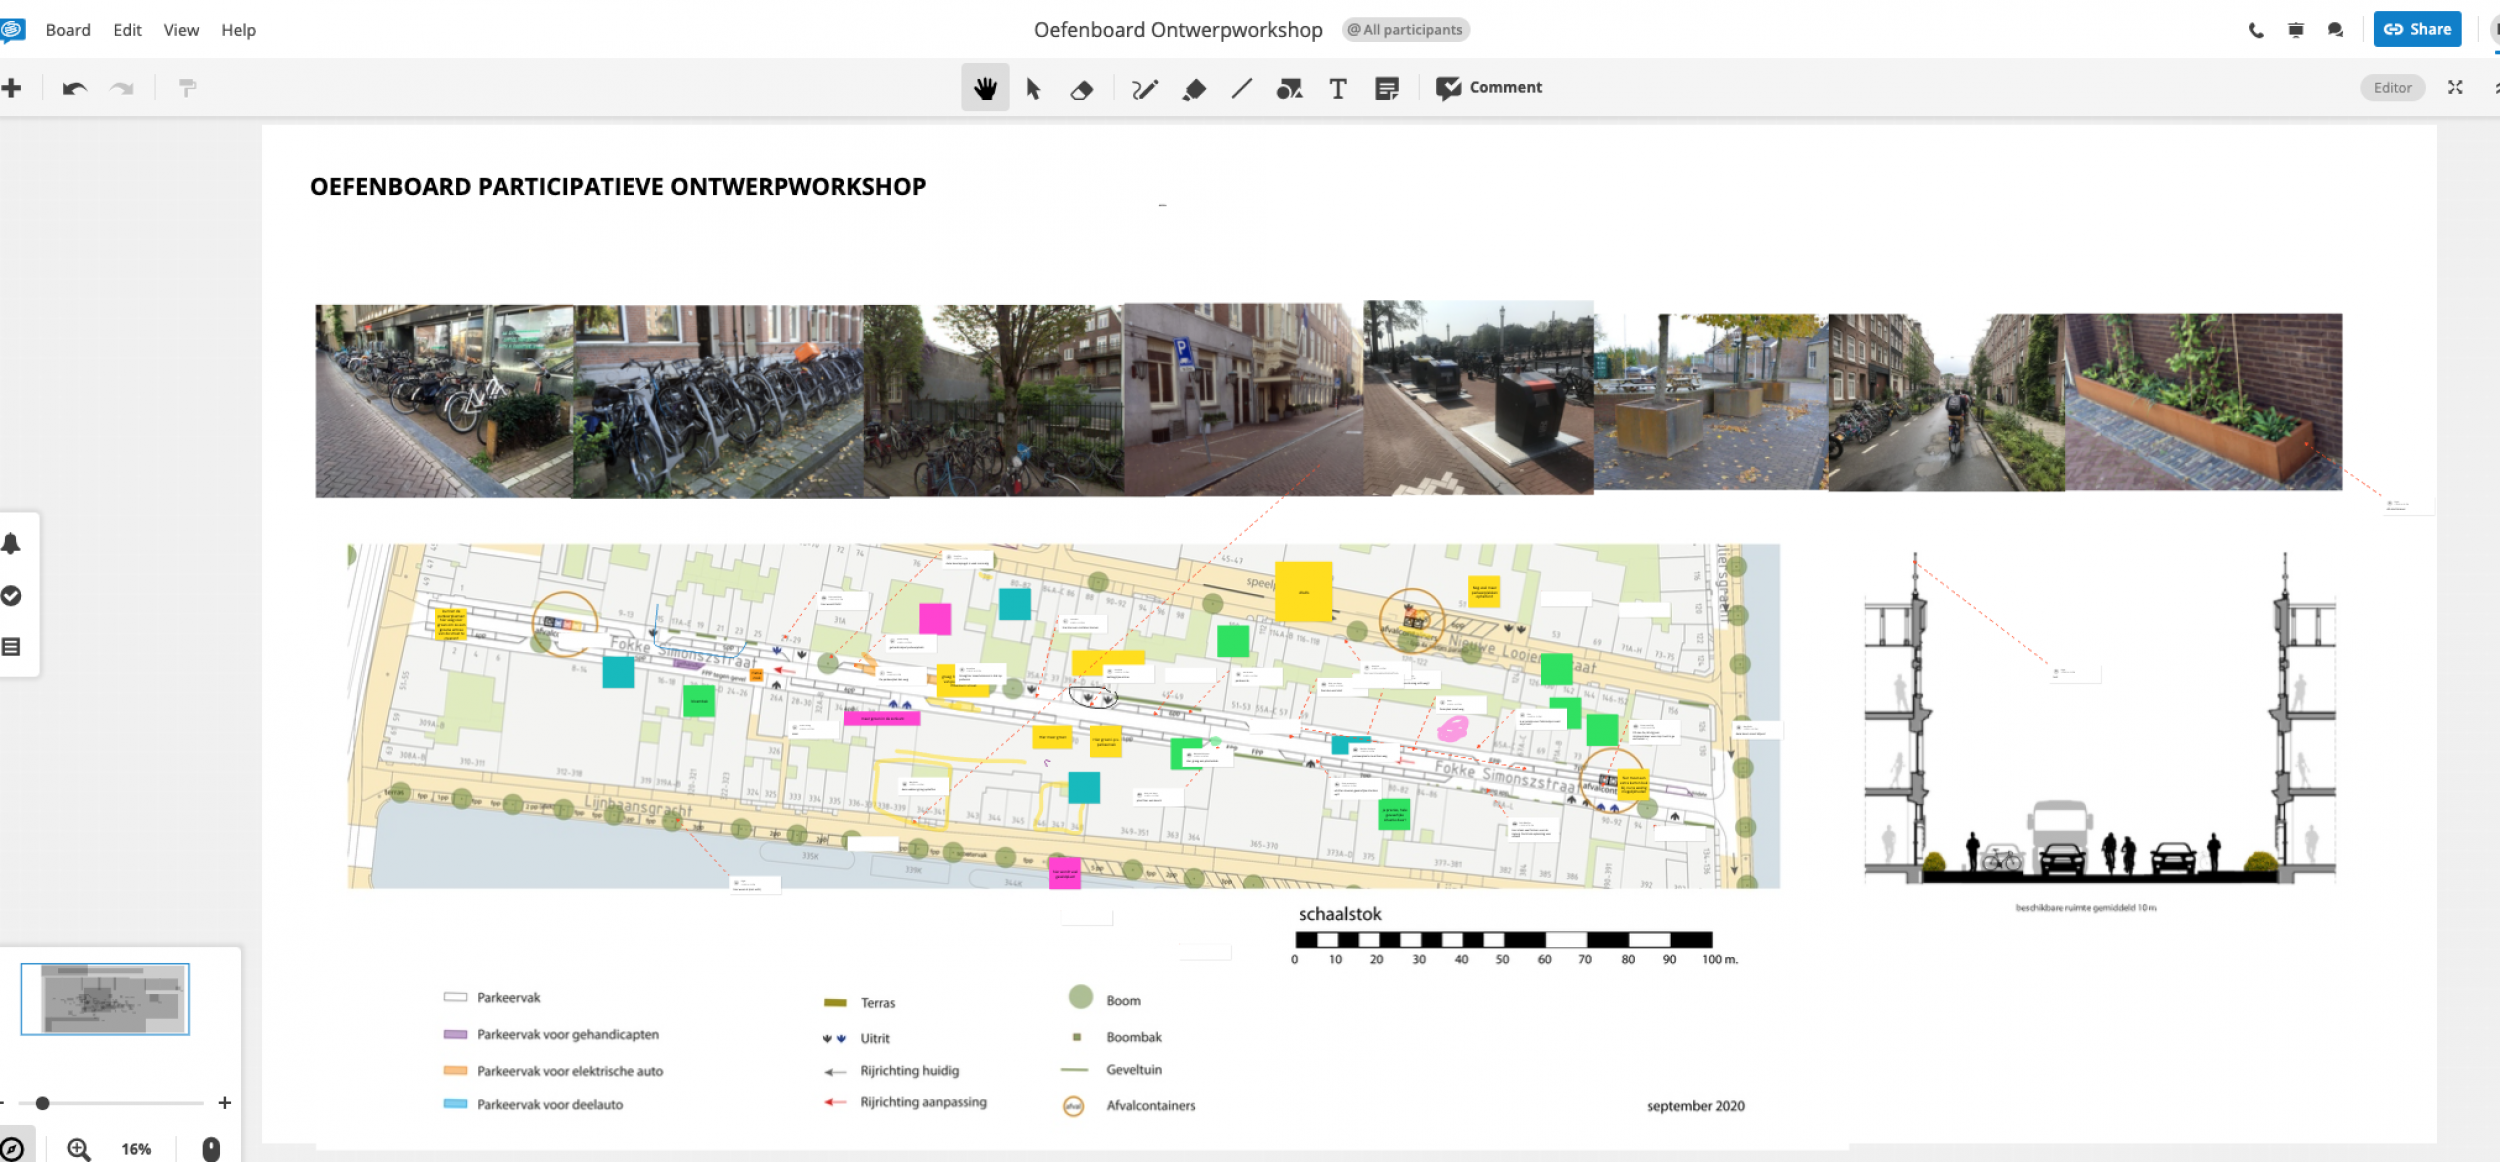 Digitale bewonersparticipatie bij ruimtelijk ontwerp.